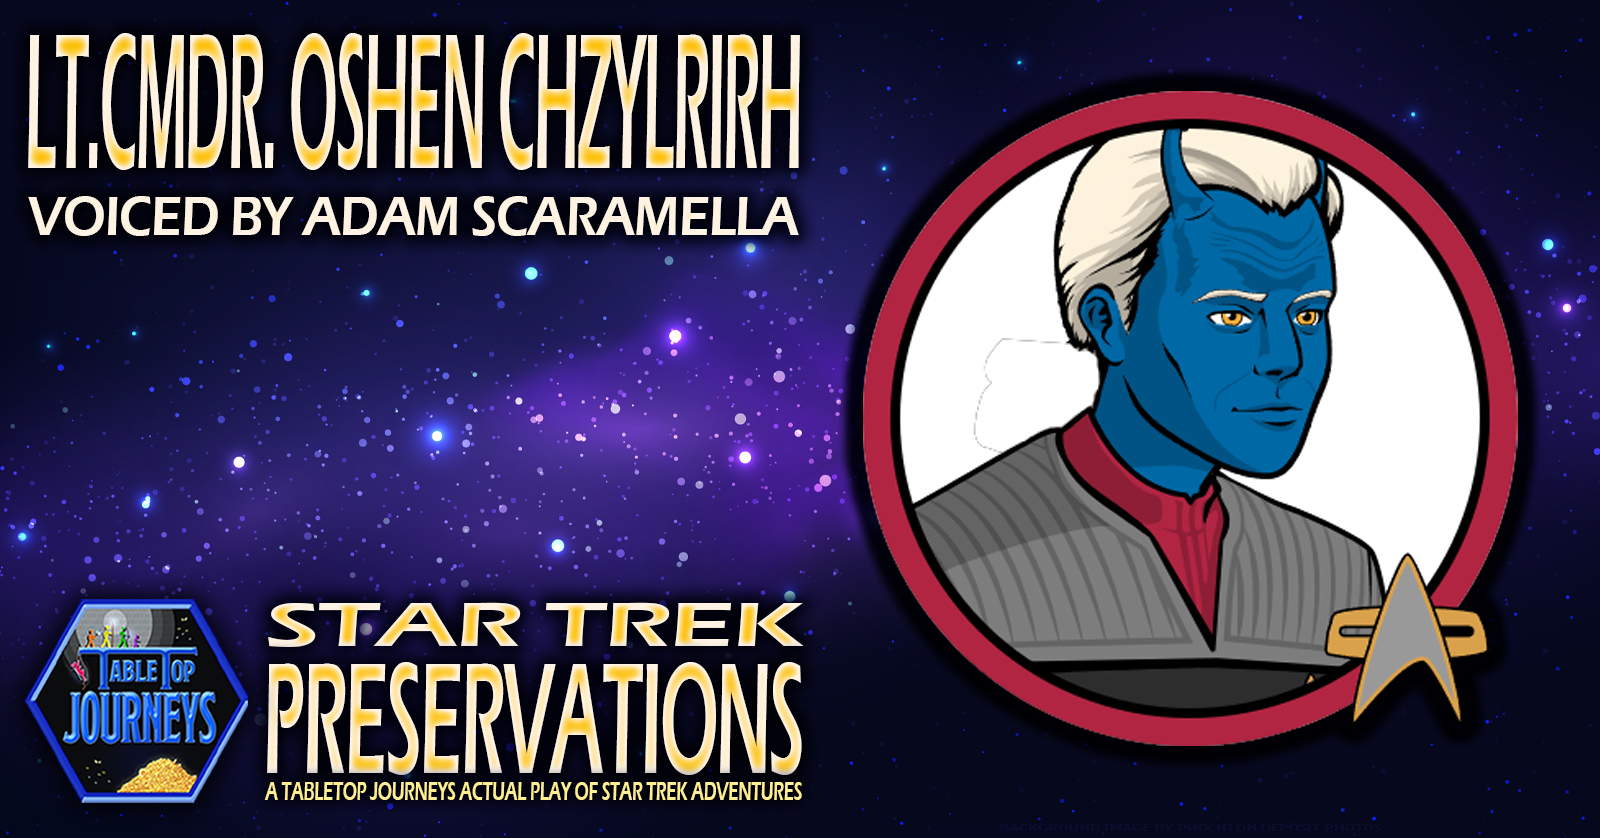 Star Trek Preservations: Interview with Lt. Cmdr. Oshen